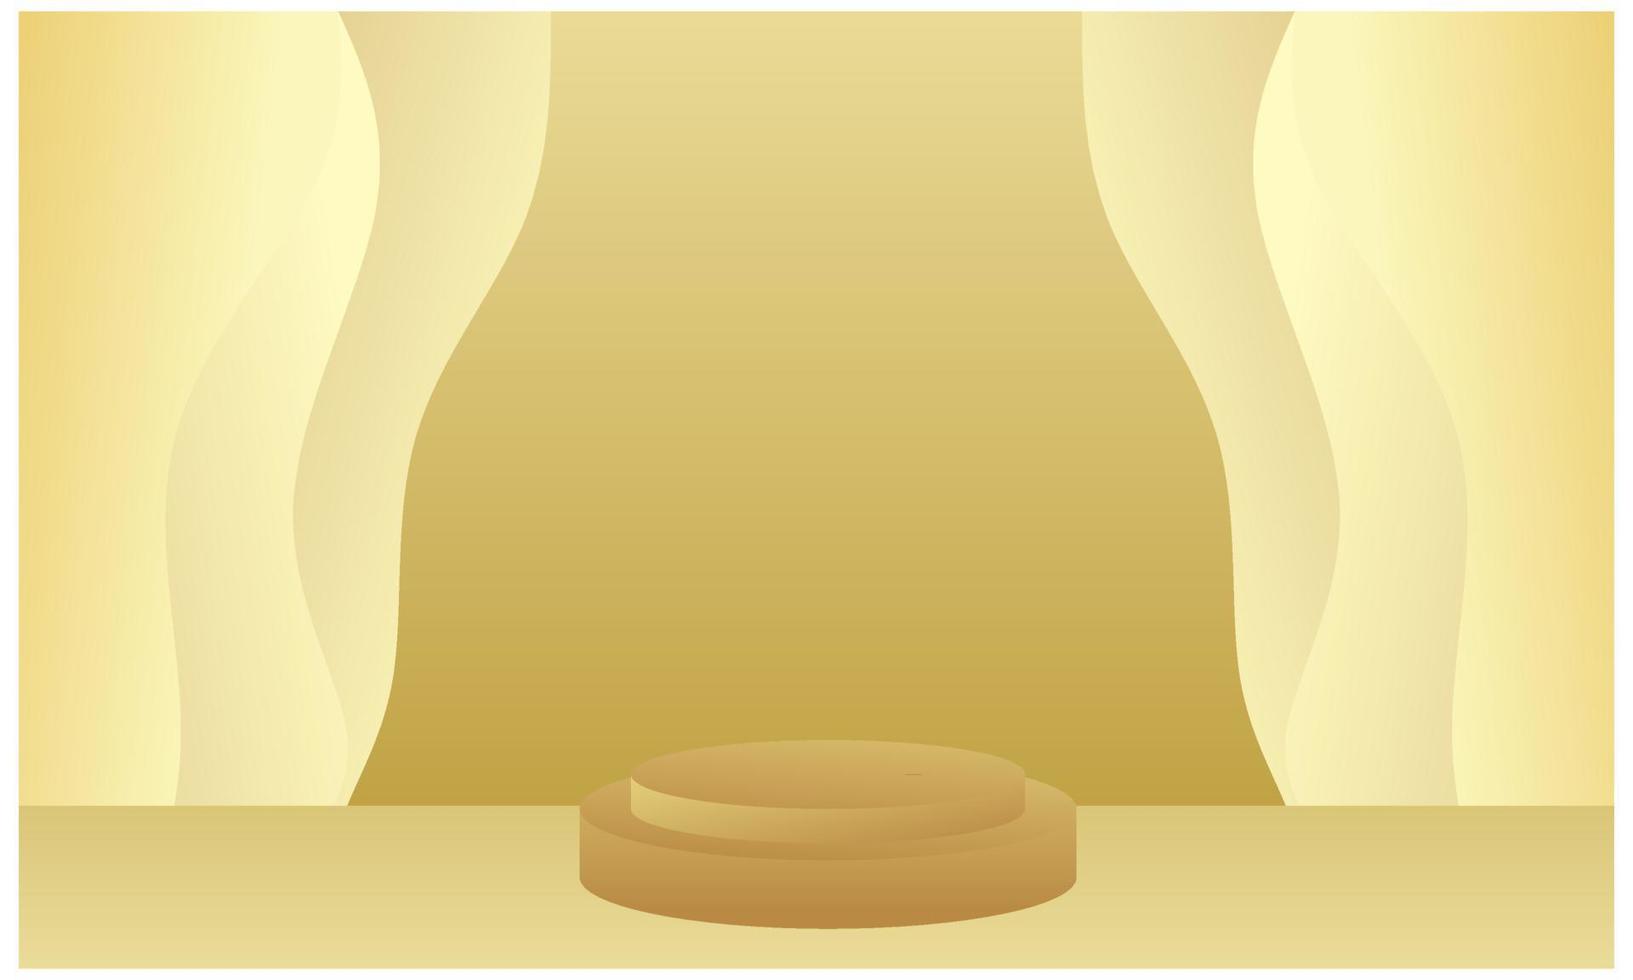 gouden podium voor luxegoederen, productpresentatie, winnaarspodium. vector illustratie